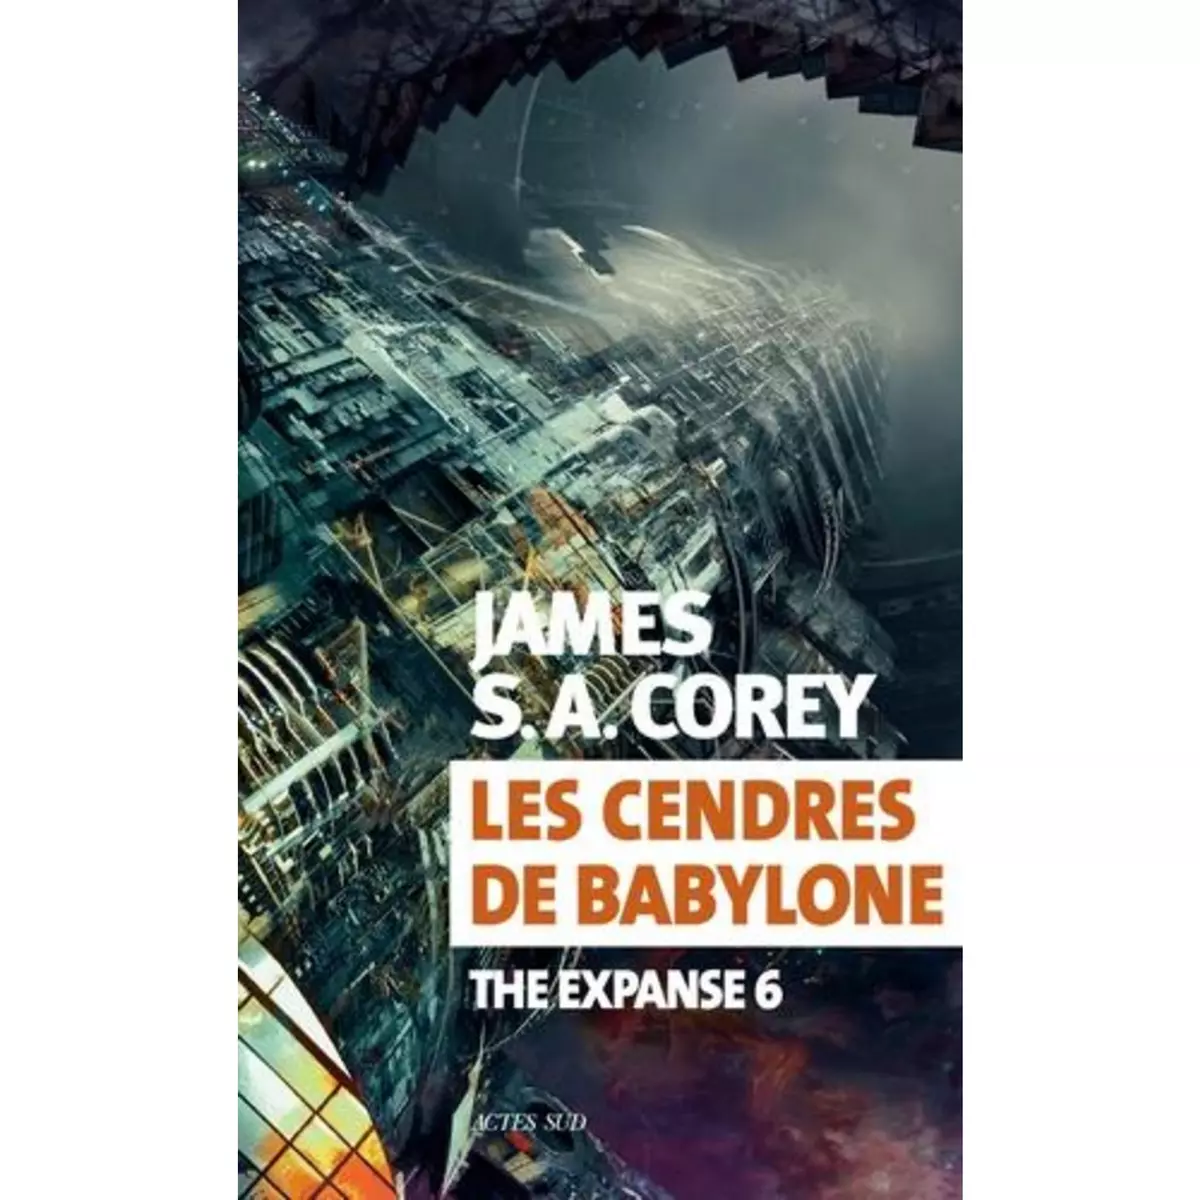  THE EXPANSE TOME 6 : LES CENDRES DE BABYLONE, Corey James S. A.